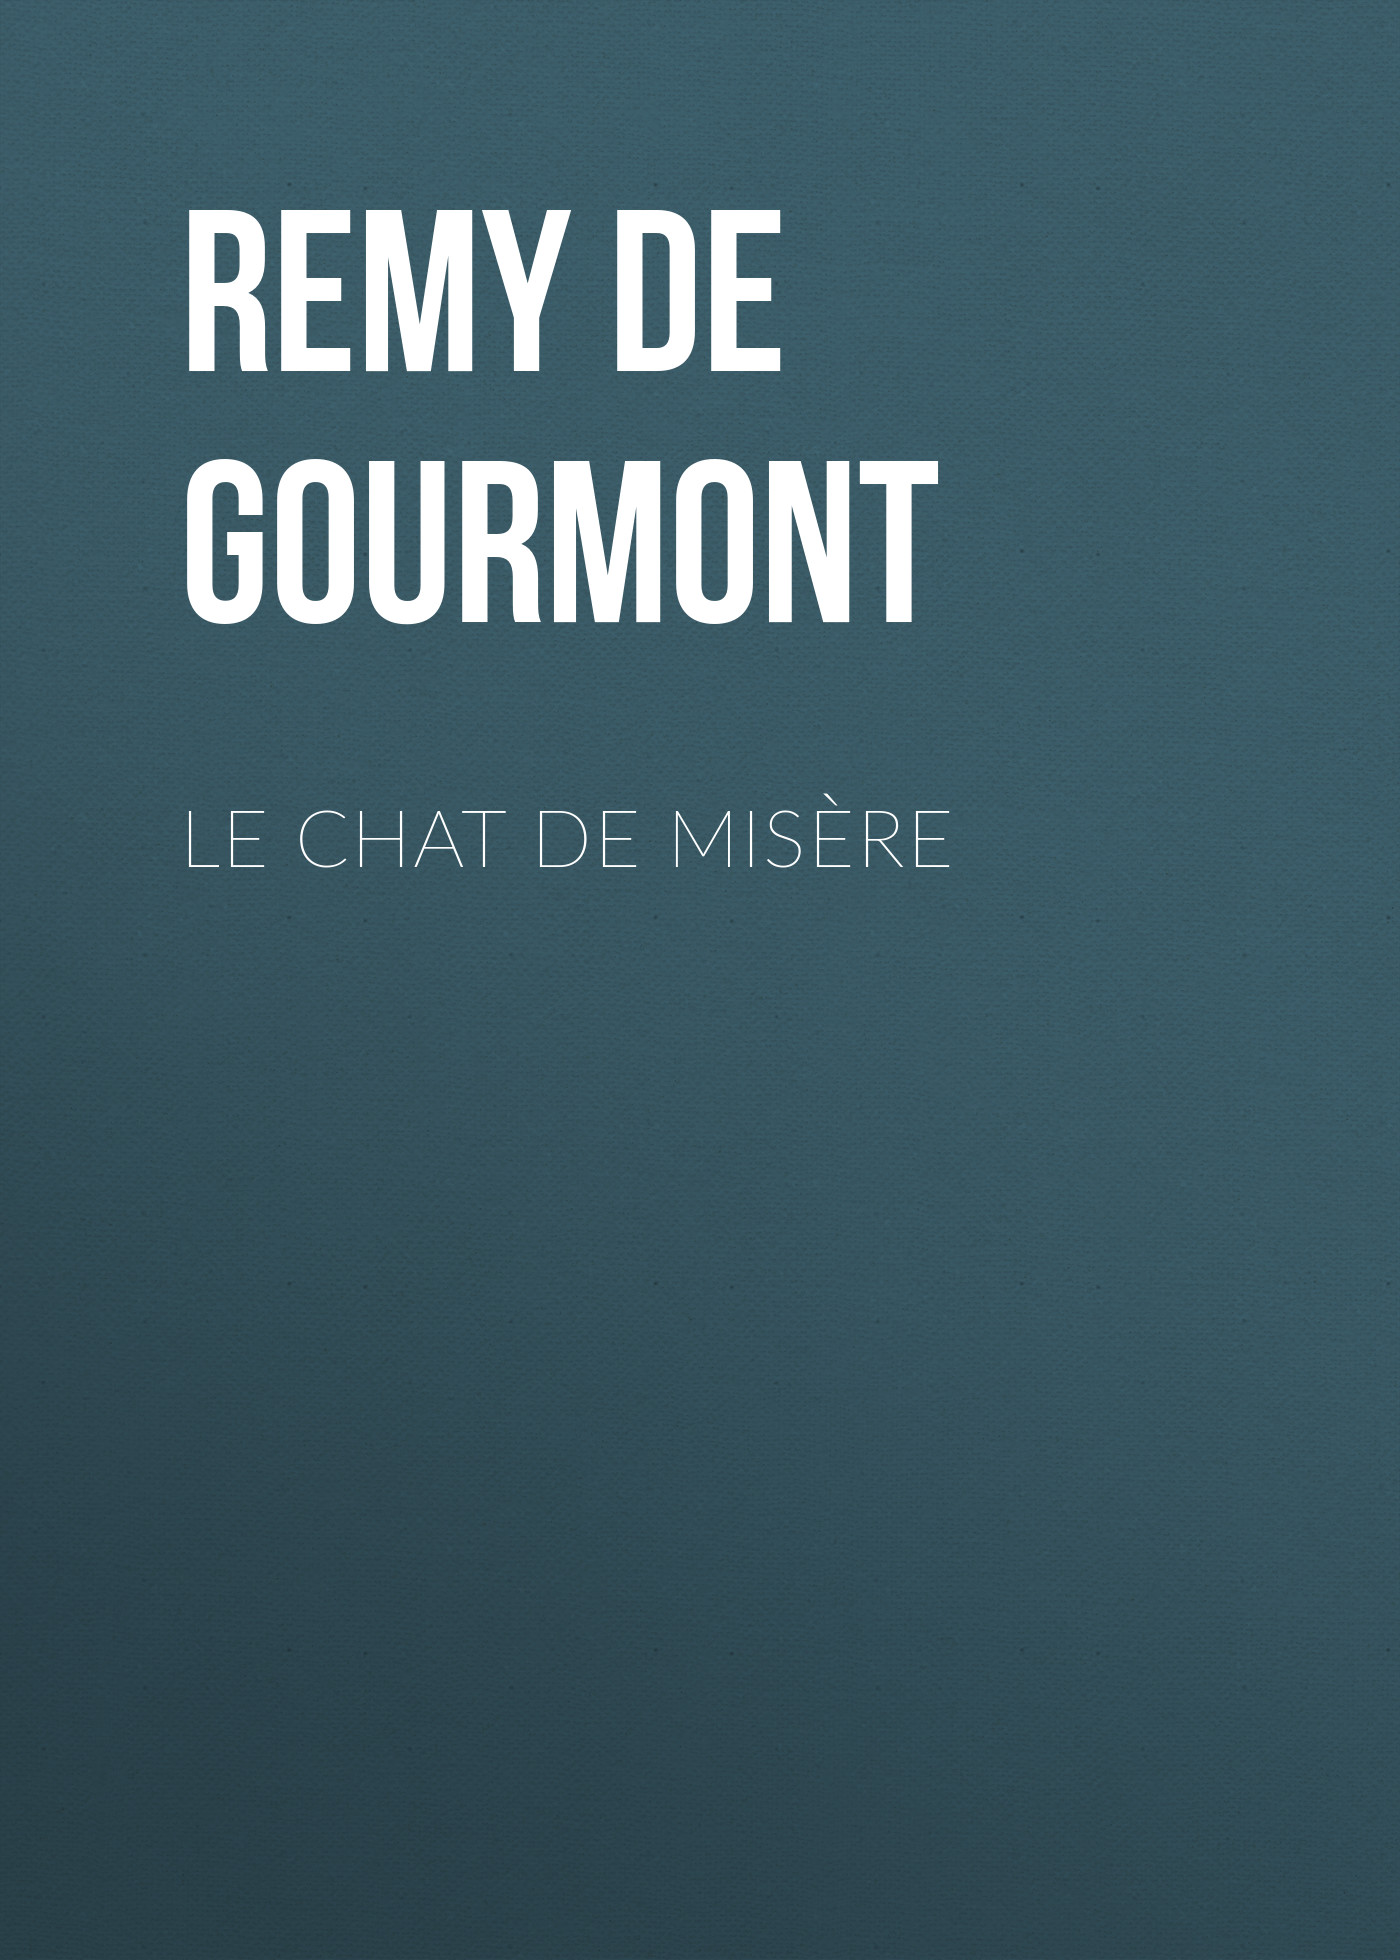 Книга Le chat de misère из серии , созданная Remy Gourmont, может относится к жанру Зарубежная старинная литература, Зарубежная классика. Стоимость электронной книги Le chat de misère с идентификатором 24938397 составляет 0 руб.